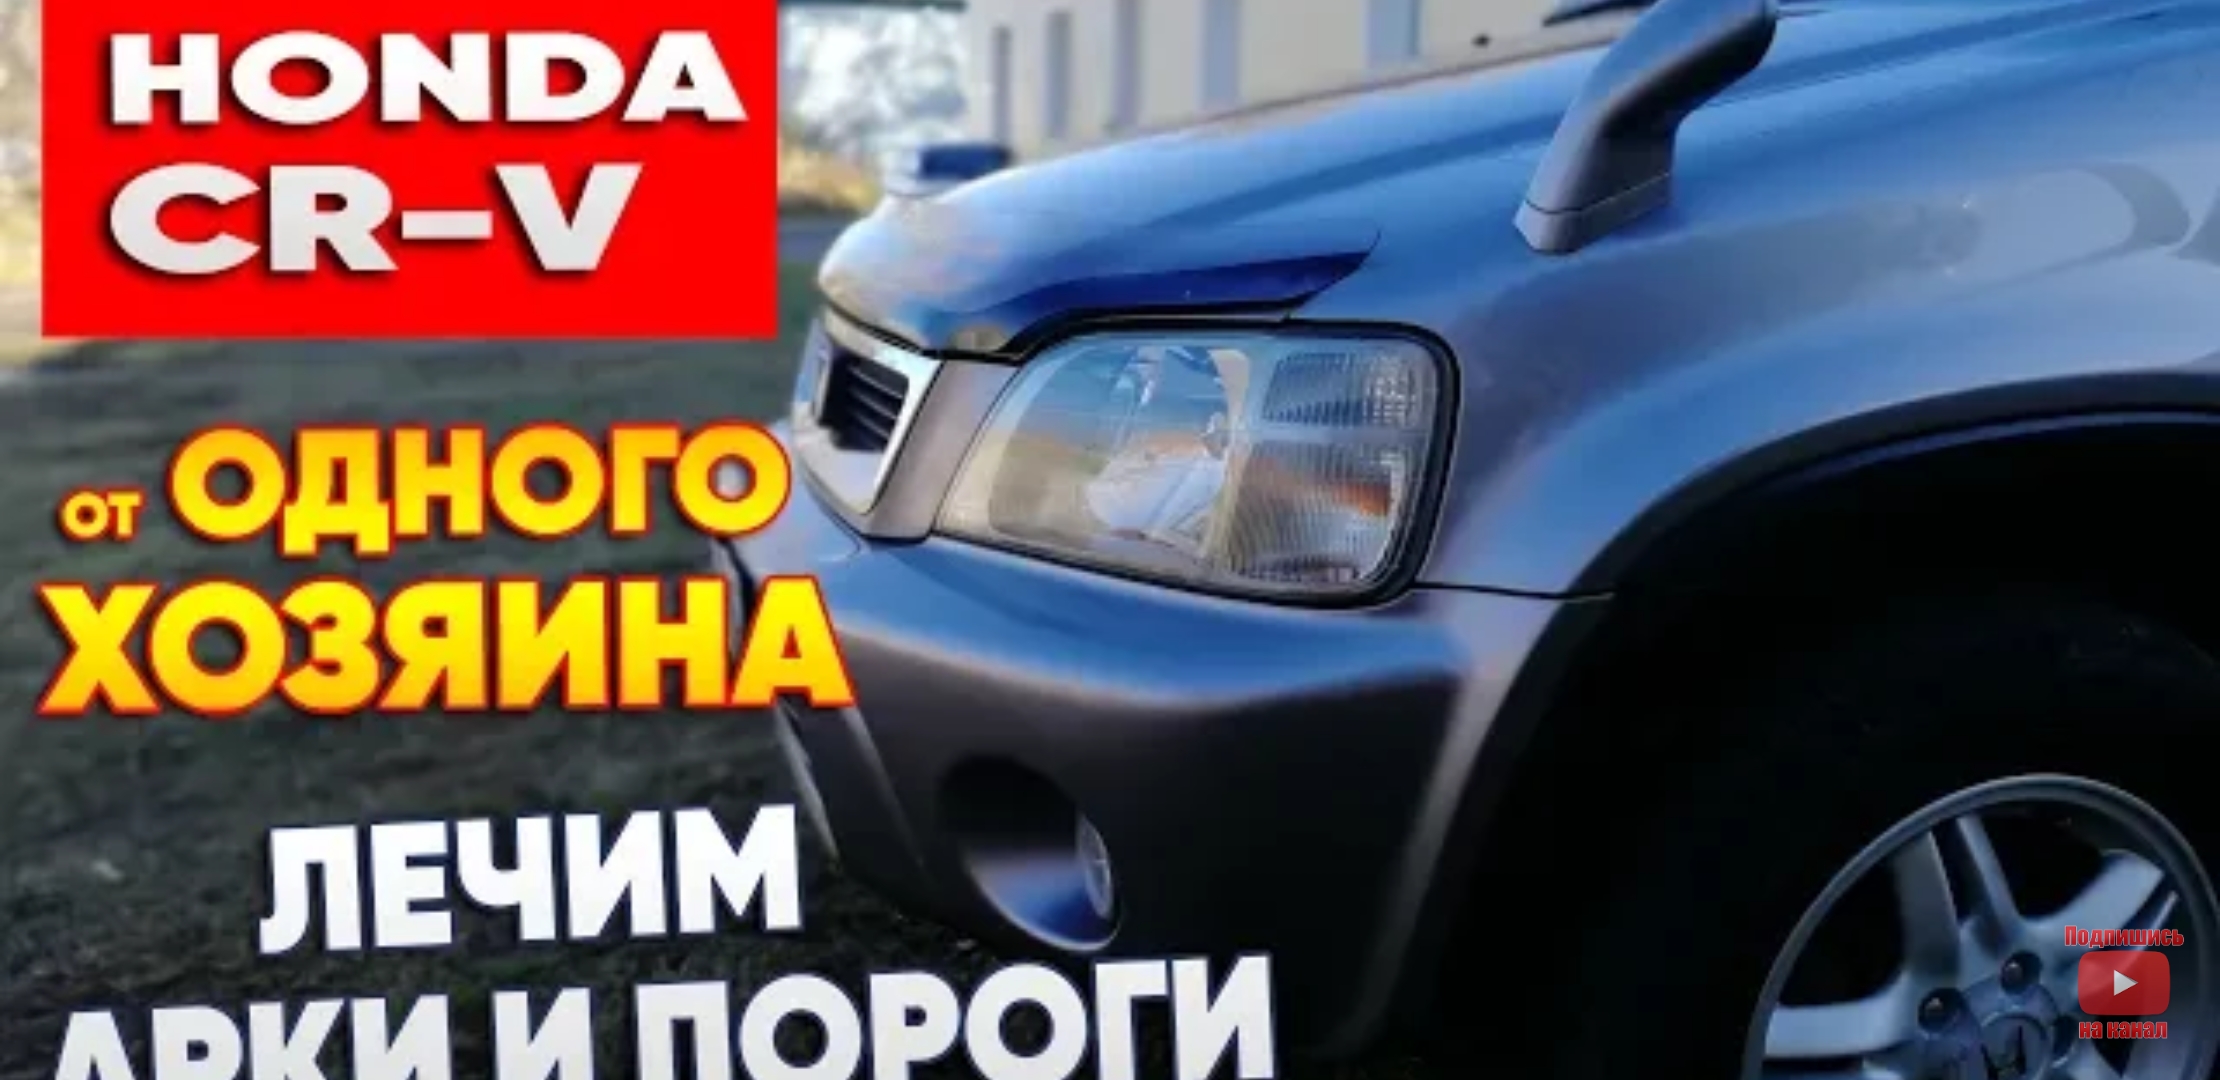 Анонс видео-теста Honda CR-V от одного хозяина. Лечим арки.